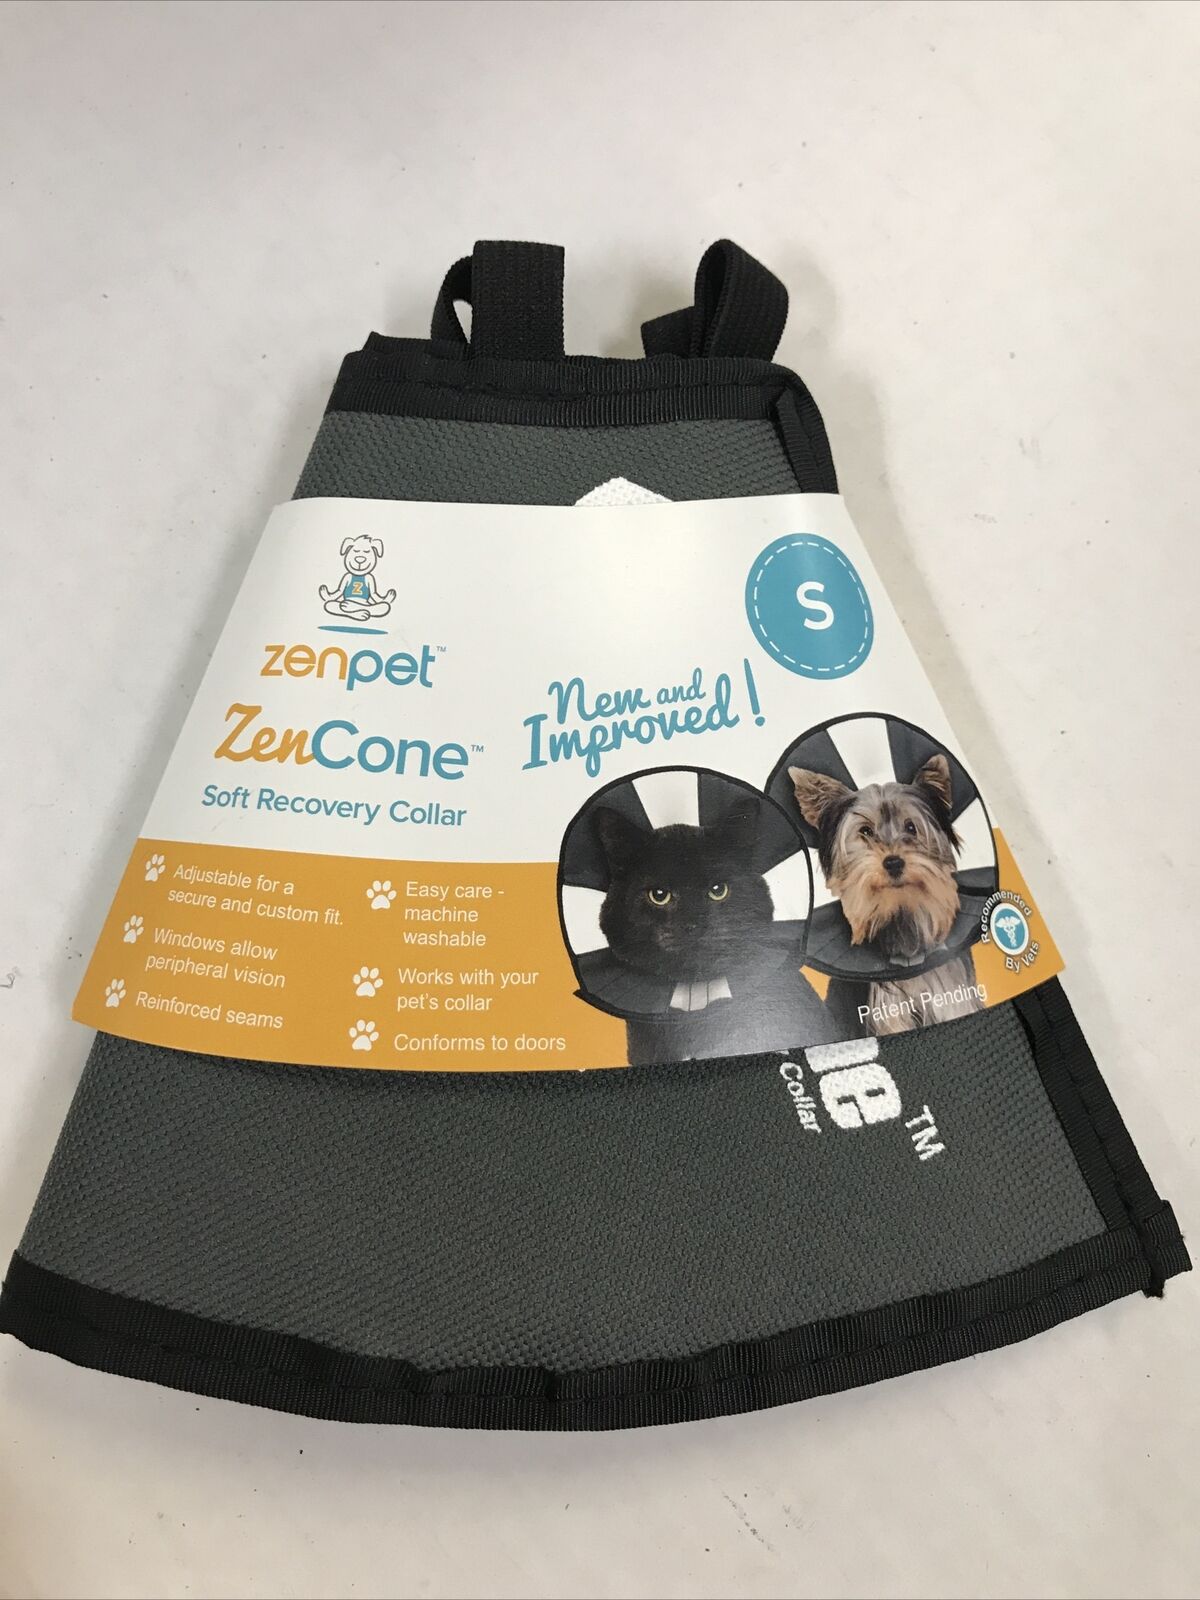 Zen Pet Zen Cone New & Improved Soft Recovery Collar - Small - ZenPet ZenCone